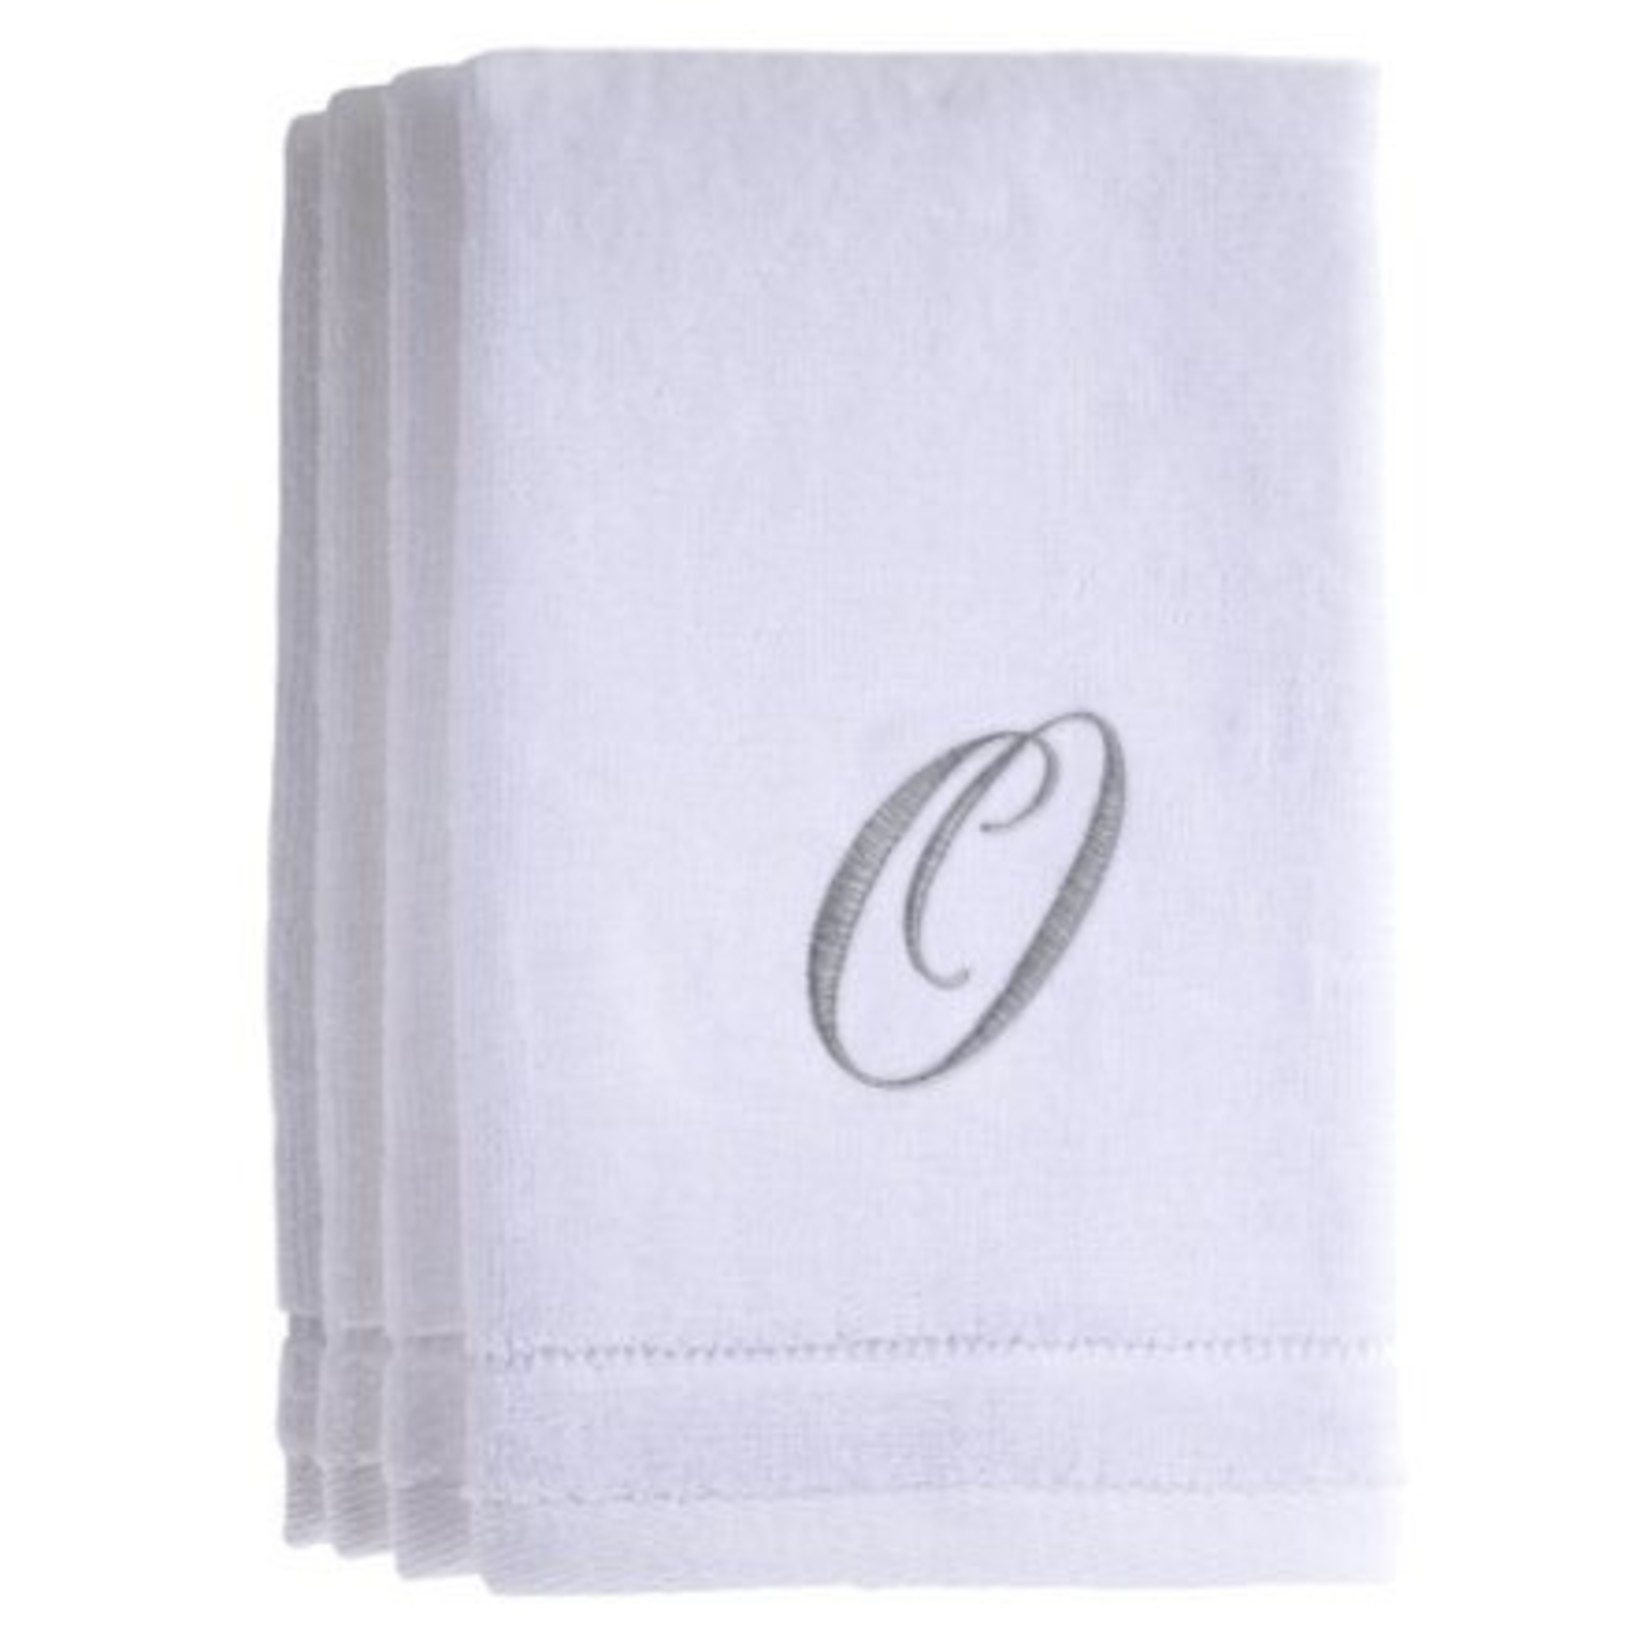 TWS O - Cotton velour monogram towel - White